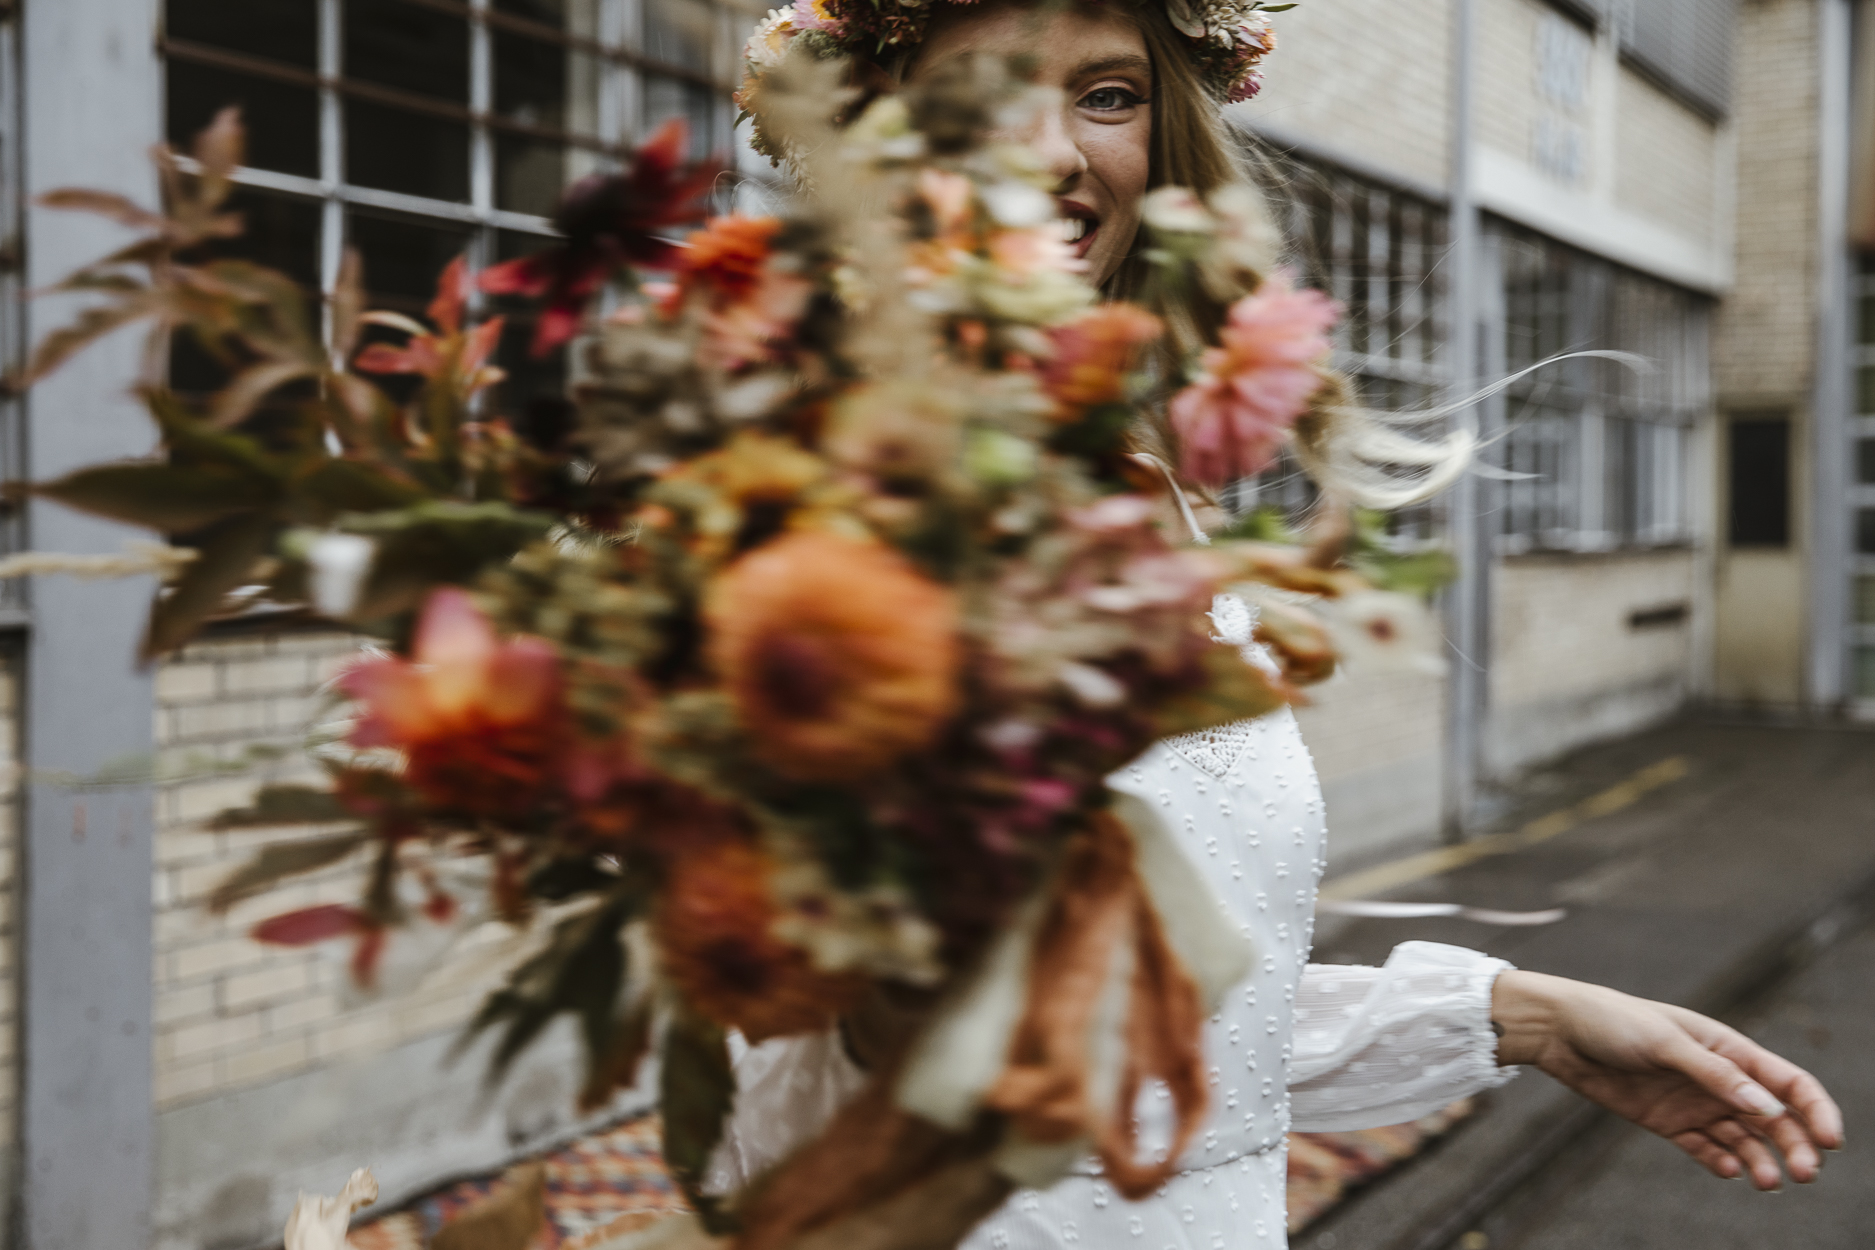 nachhaltig heiraten mit slowflowers von fleuraissance